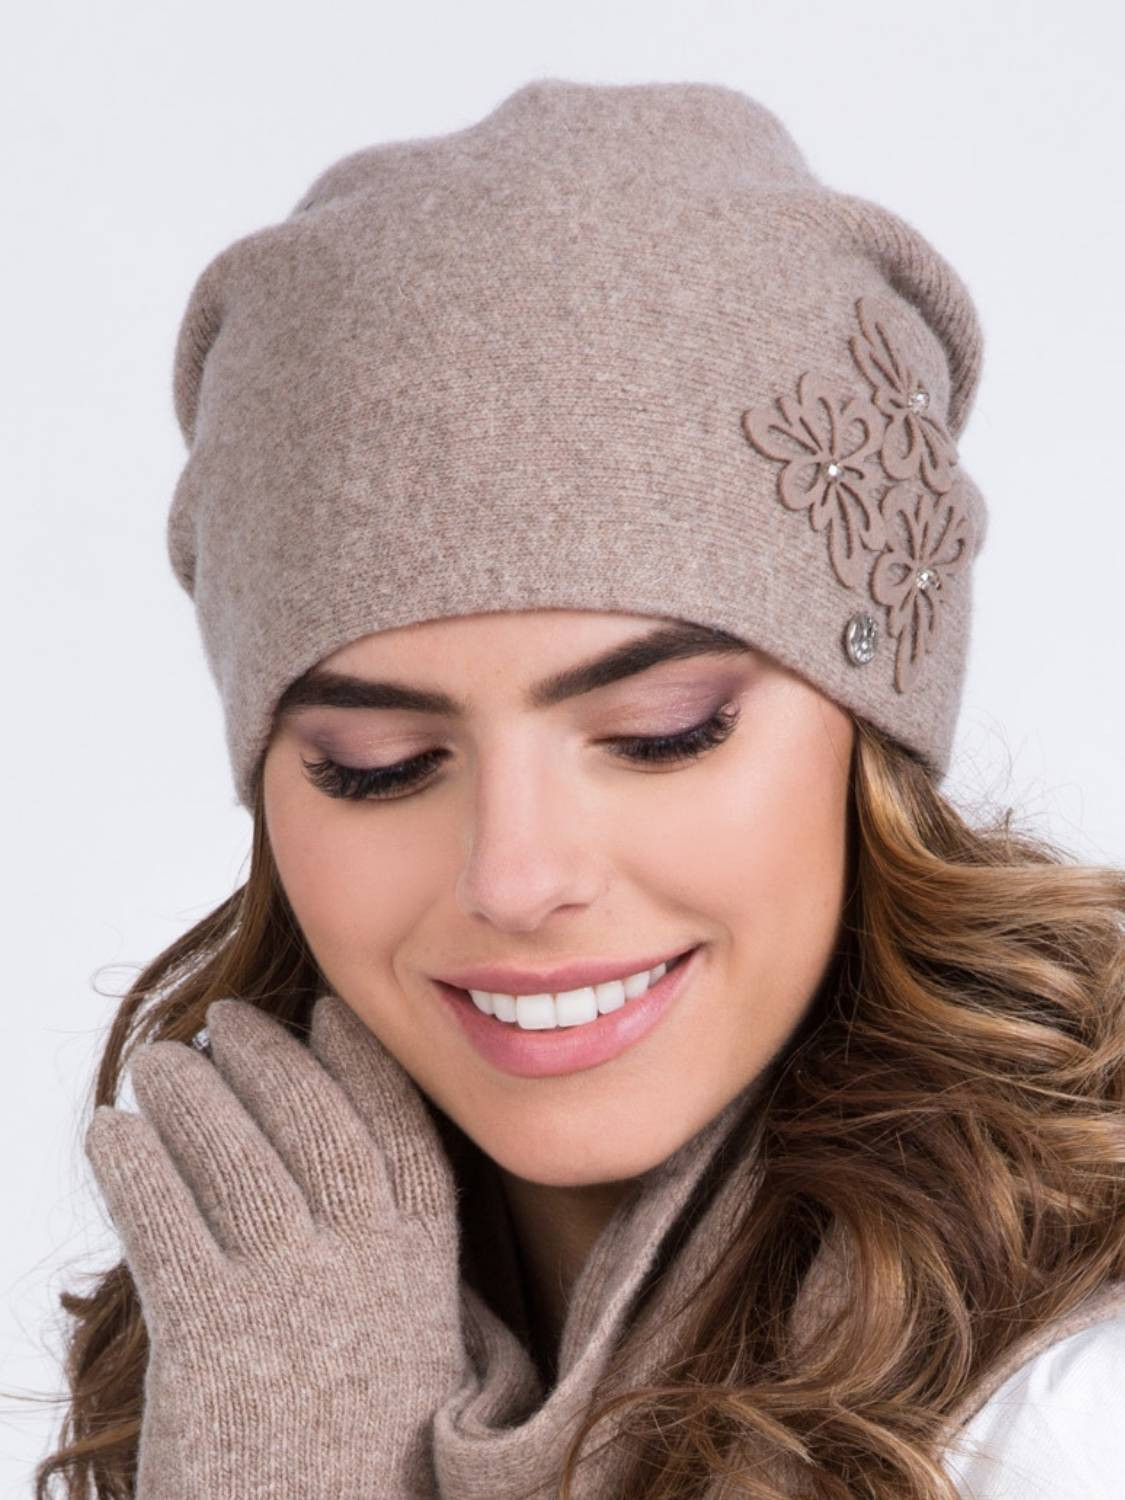 Beau chapeau d'hiver pour femmes, LILLY_04